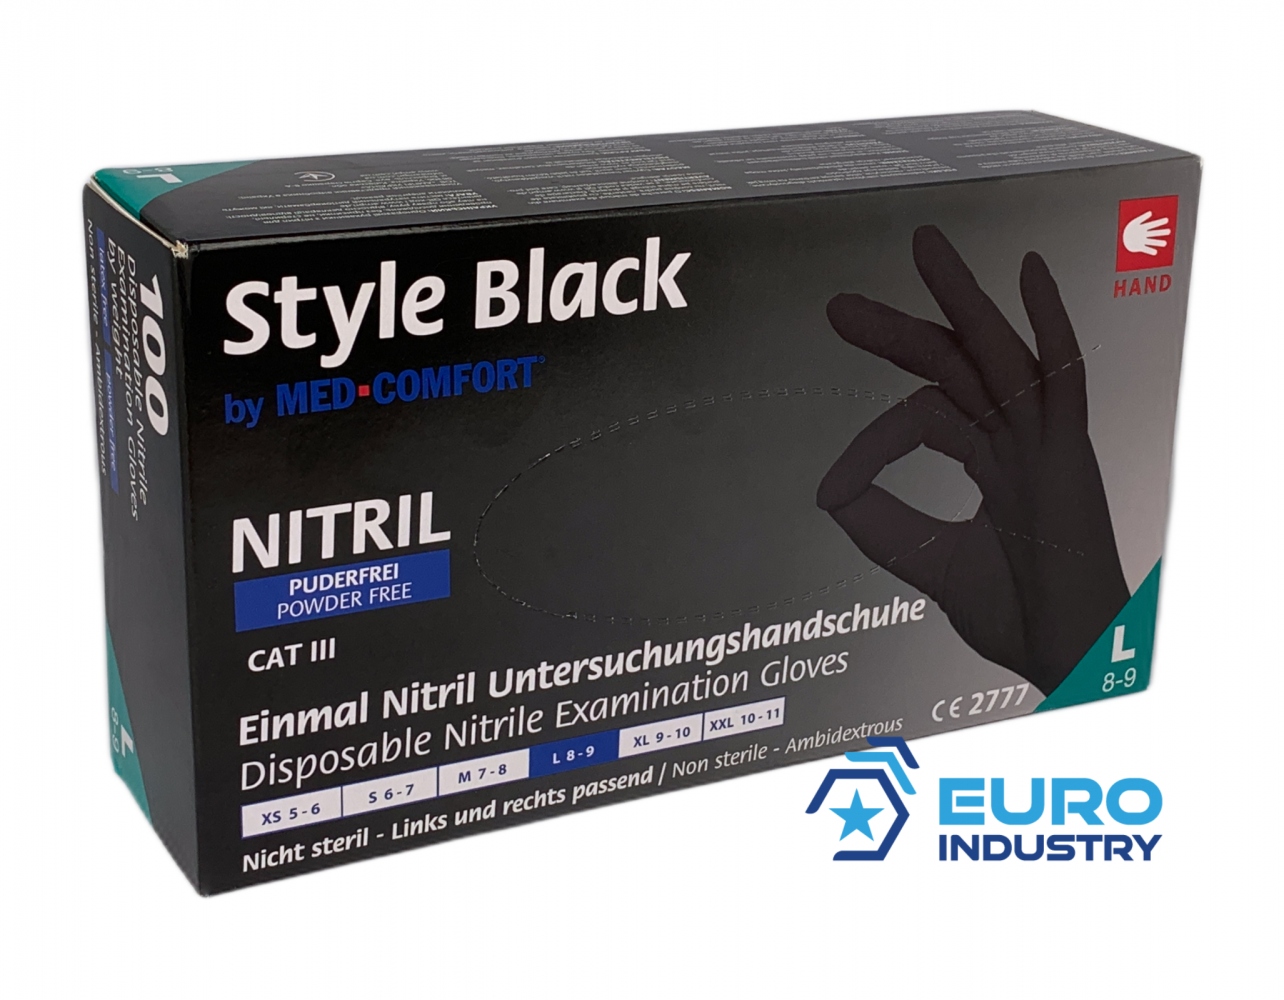 pics/med-comfort/med-comfort-sytyle-black-einweghandschuhe-nitril-puderfrei-100er-packung-schwarz-02.jpg